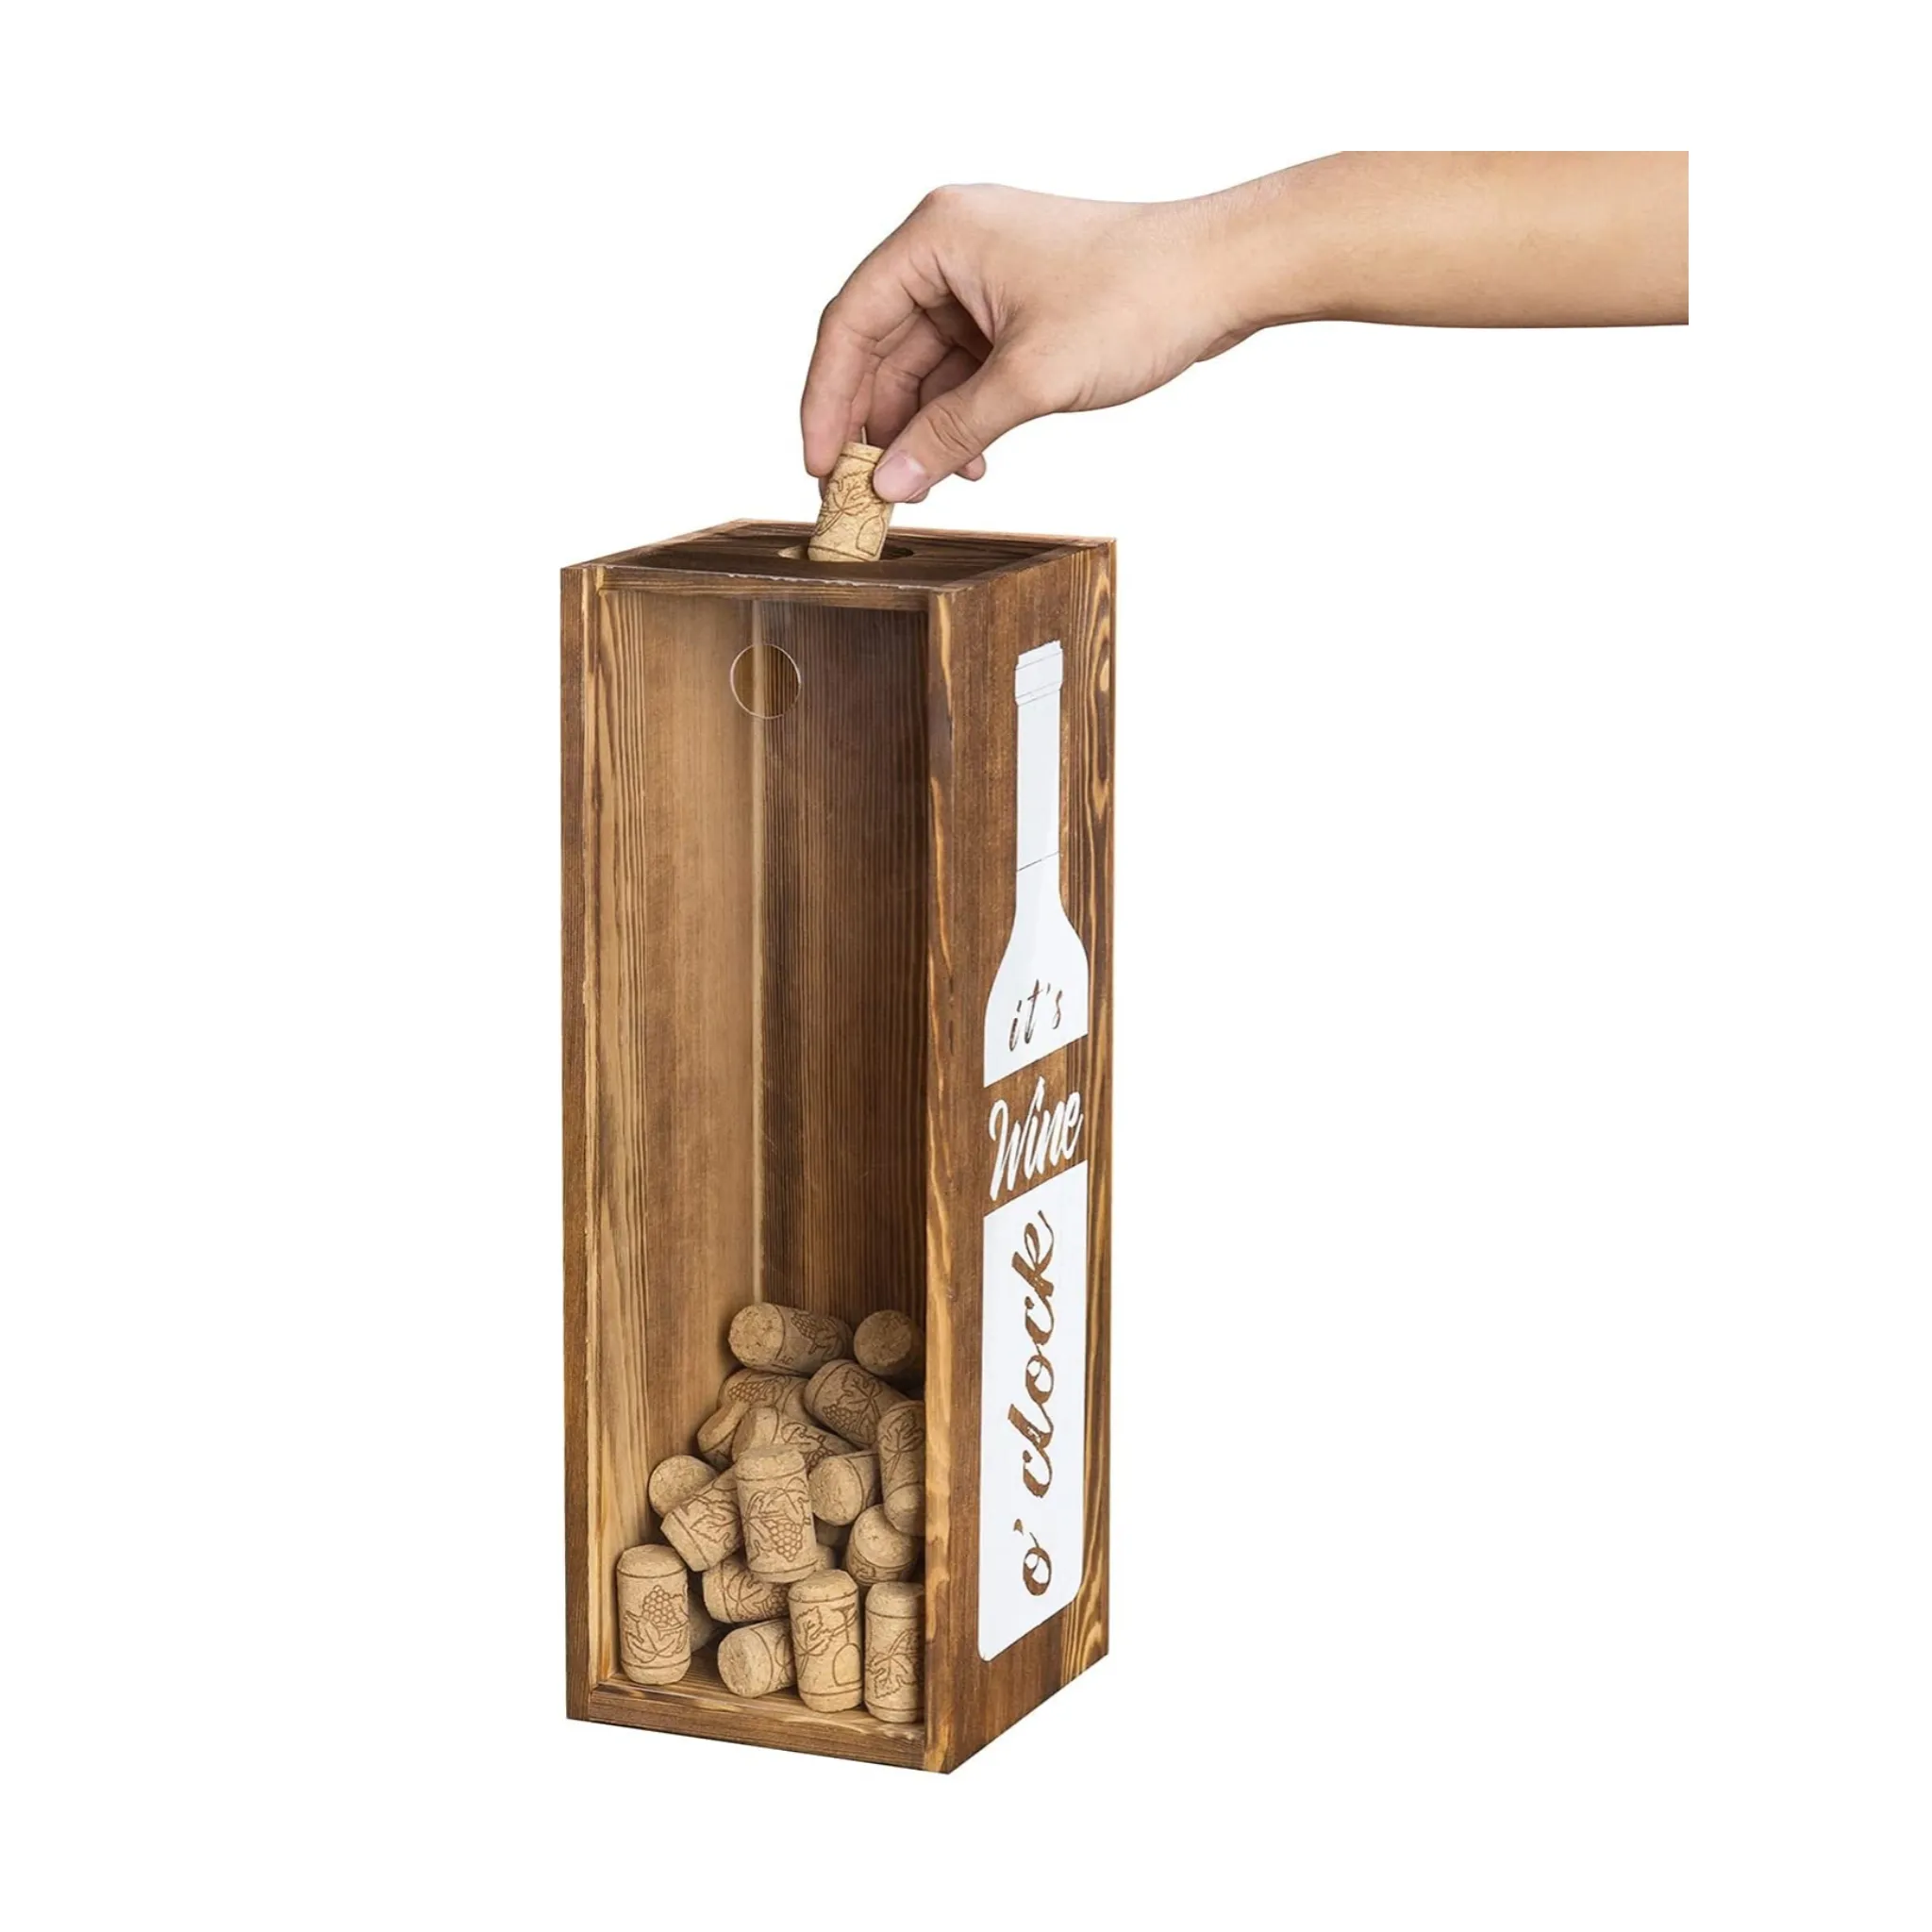 Rustieke Verbrand Hout Wijnfles Gift Box-Decoratieve Kurk Houder Met Clear Voorpaneel Houten Houder